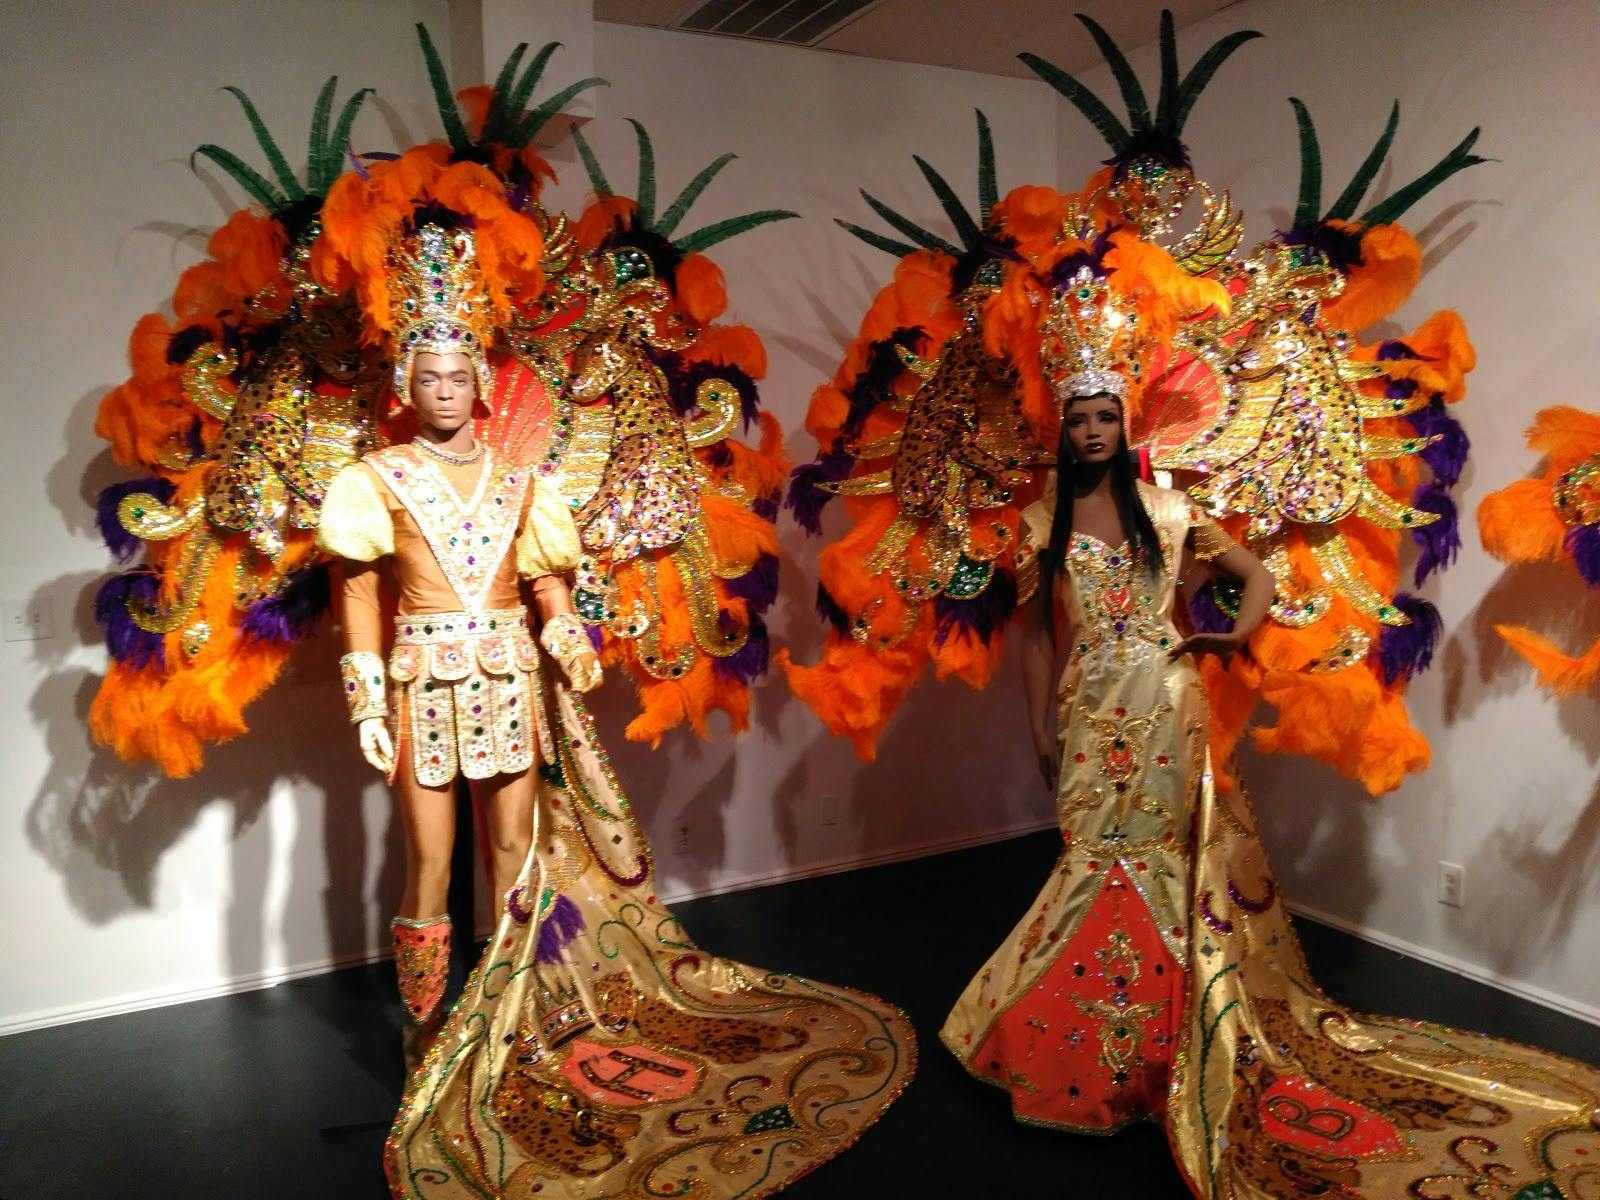 Image - Mardi Gras Museum of Costumes & Culture